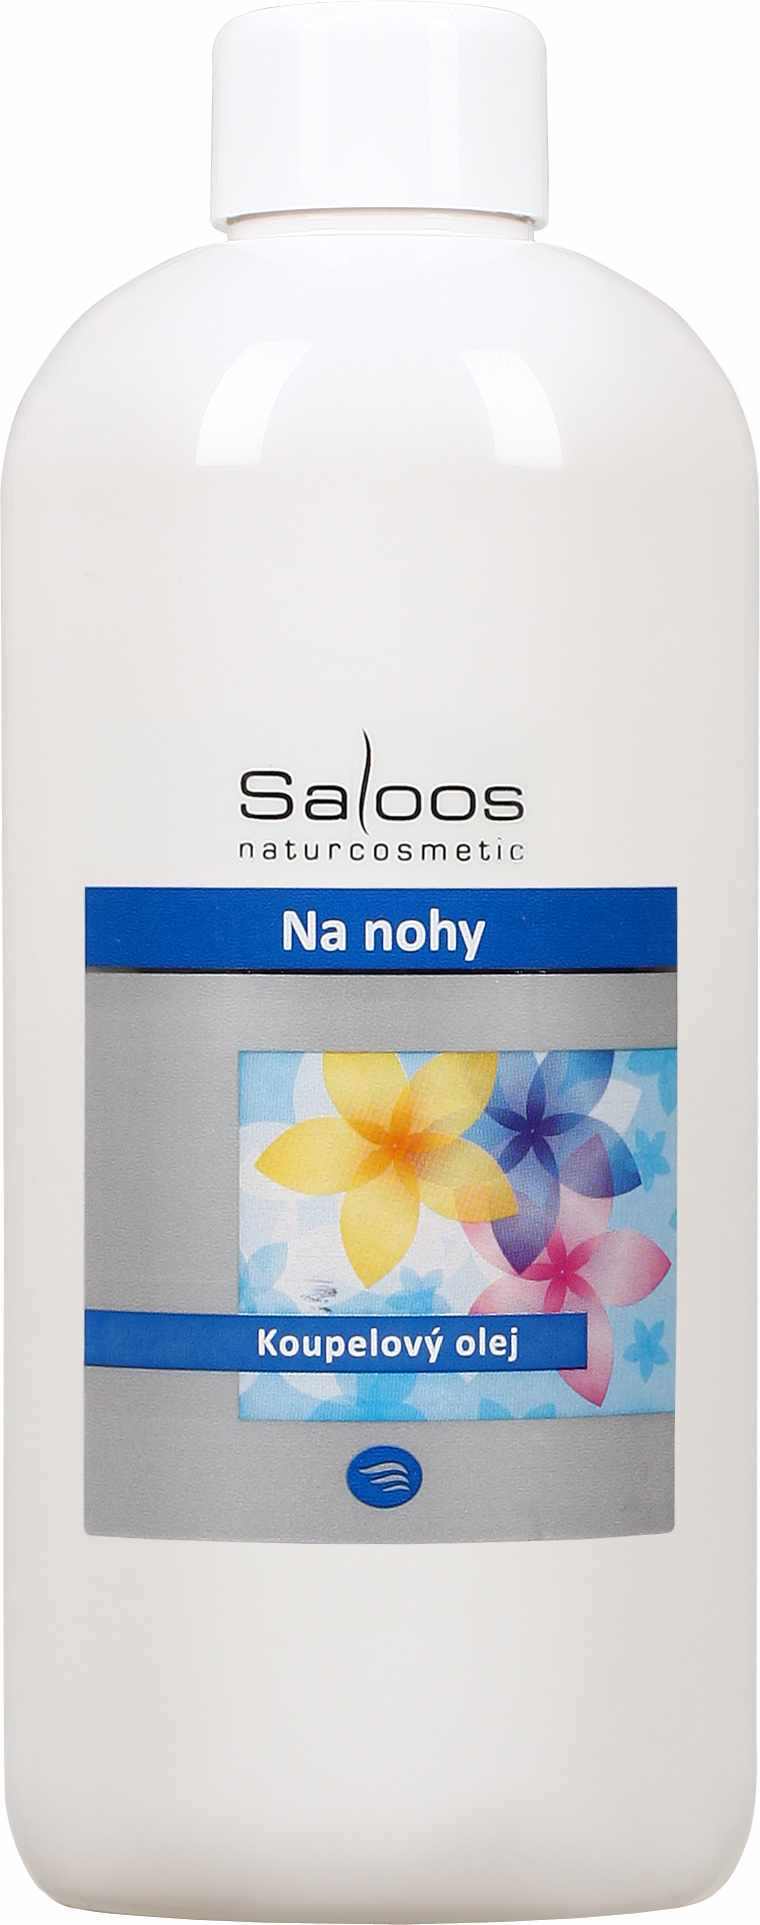 Saloos Na nohy - koupelový olej Balení: 1000 ml